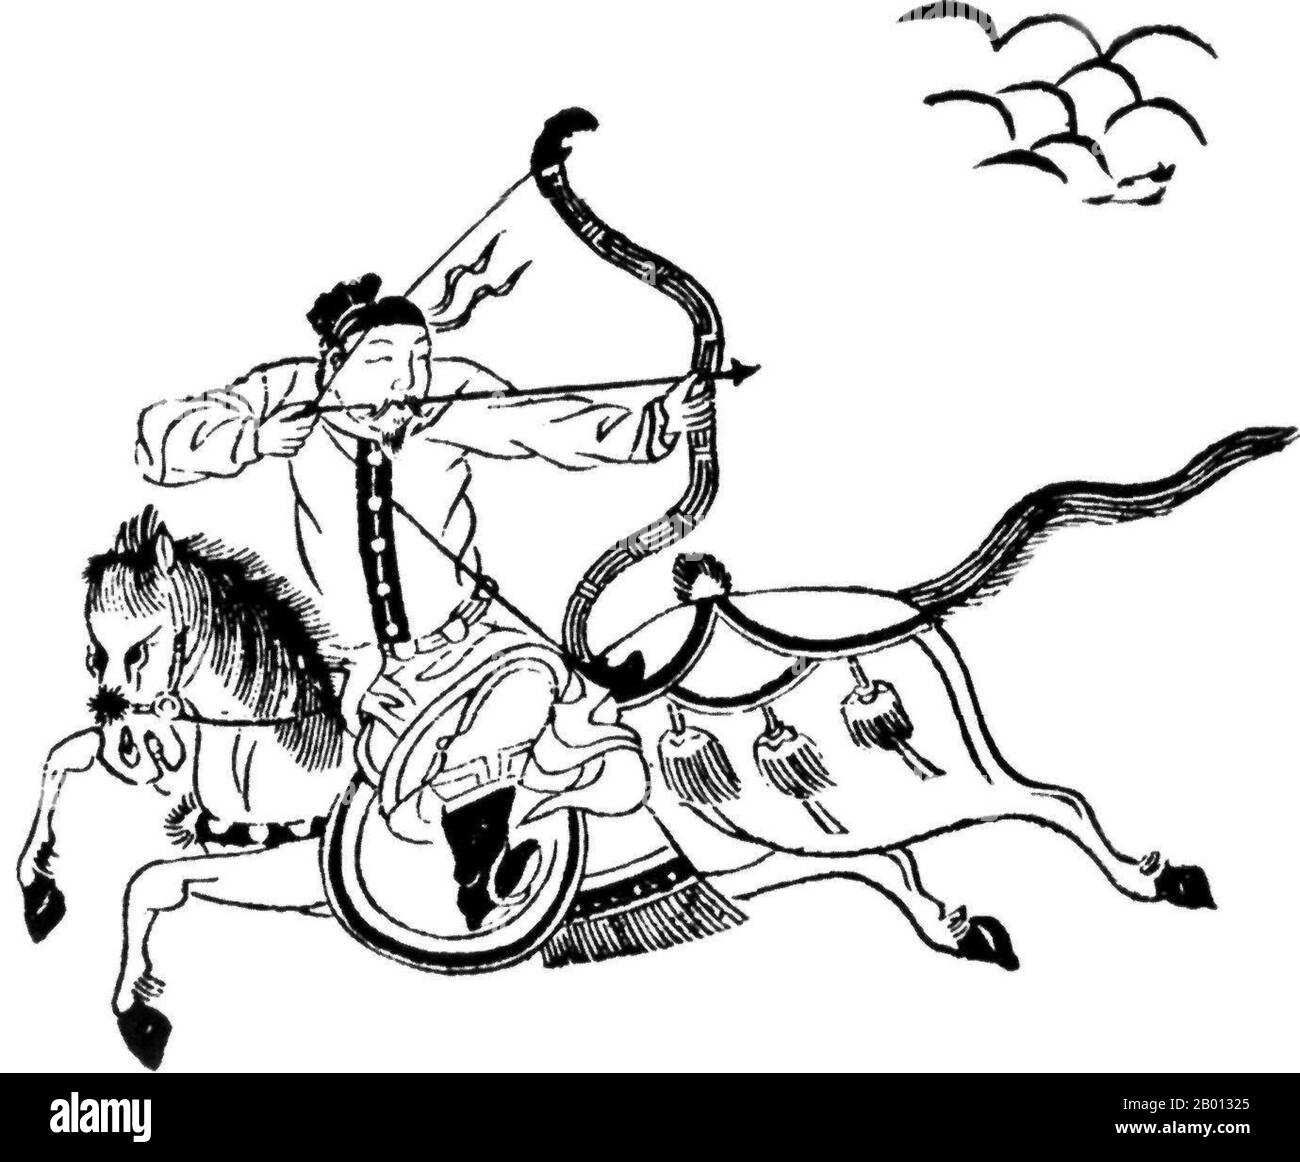 China: Dibujo de un arquero montado, Dinastía Ming (1368-1644), siglo 16th. Foto de stock